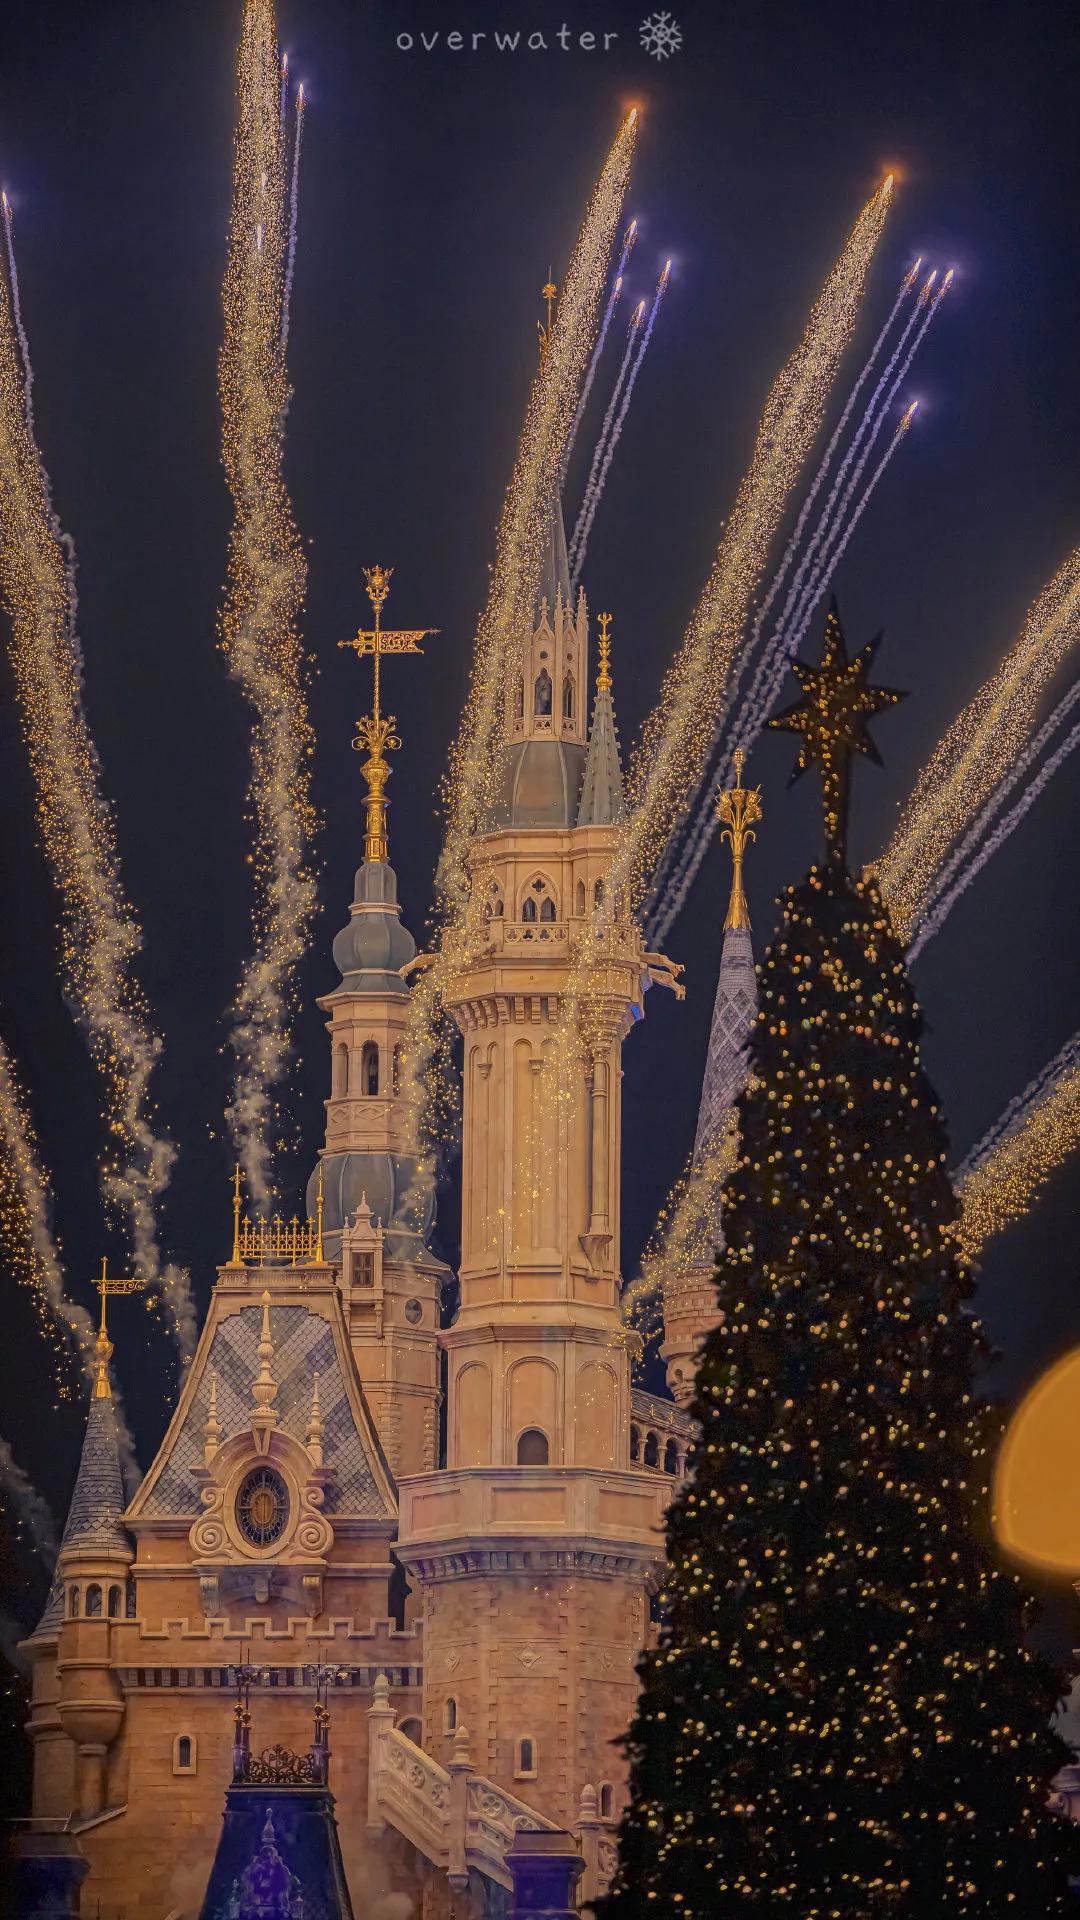 迪士尼 新年特别版花火来了噢 壁纸 背景 头像 动漫 蛋蛋赞